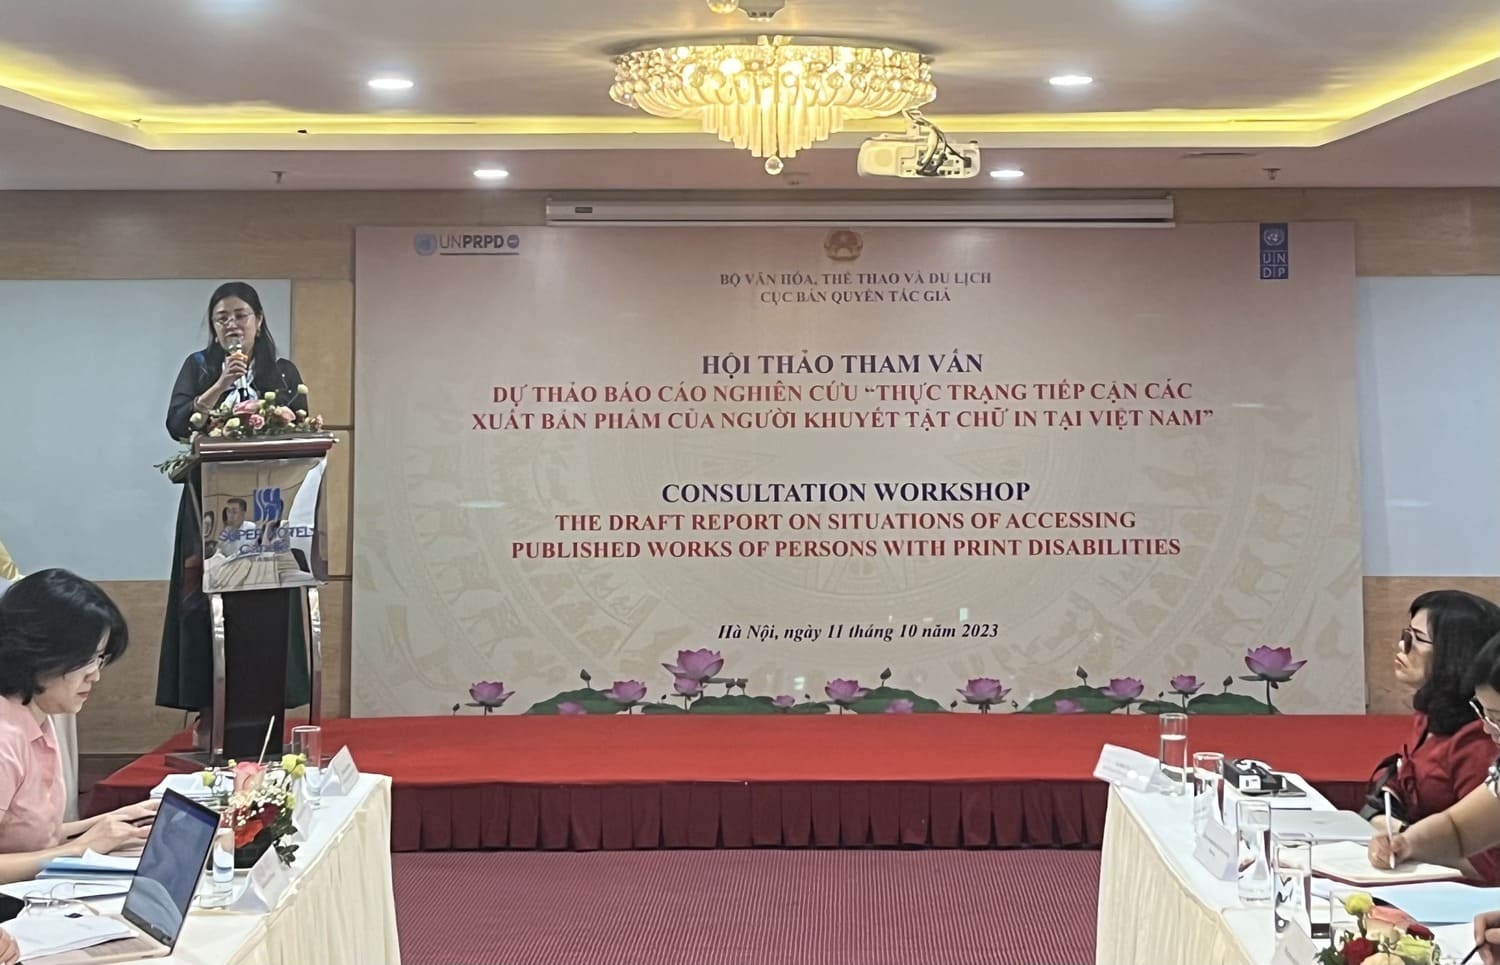 Hội thảo tham vấn về dự thảo báo cáo nghiên cứu “Thực trạng tiếp cận các xuất bản phẩm của người khuyết tật chữ in tại Việt Nam”. Ảnh: Thuỳ Trang